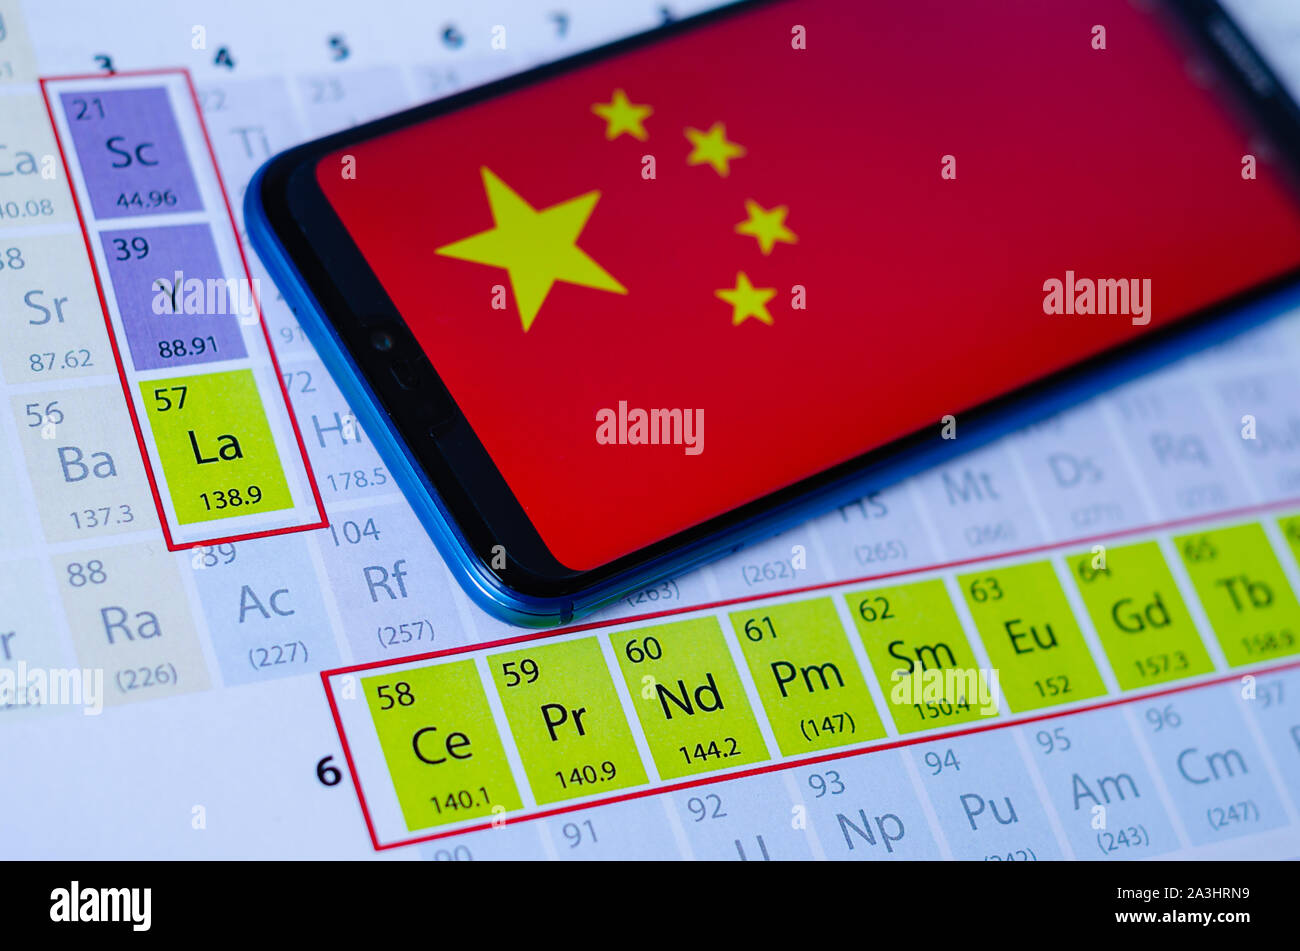 La foto della bandiera della Cina su Huawei smartphone che si posa sulla tavola periodica attorno ai gruppi di terre rare minerali. Concetto di guerra commerciale. Foto Stock